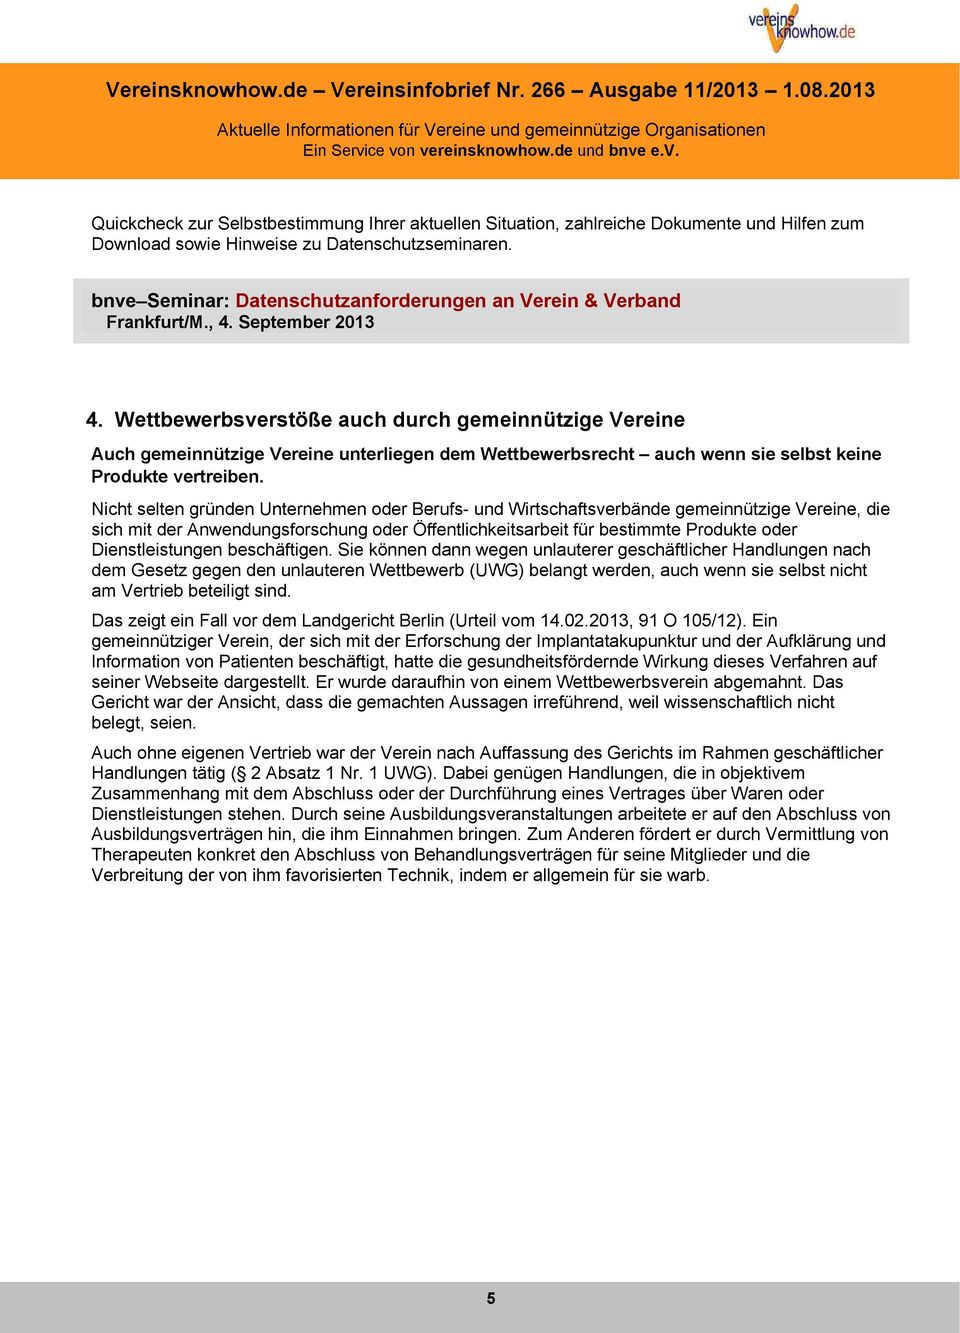 Datenschutzseminaren. bnveseminar: Datenschutzanforderungen an Verein & Verband Frankfurt/M., 4. September 2013 4.